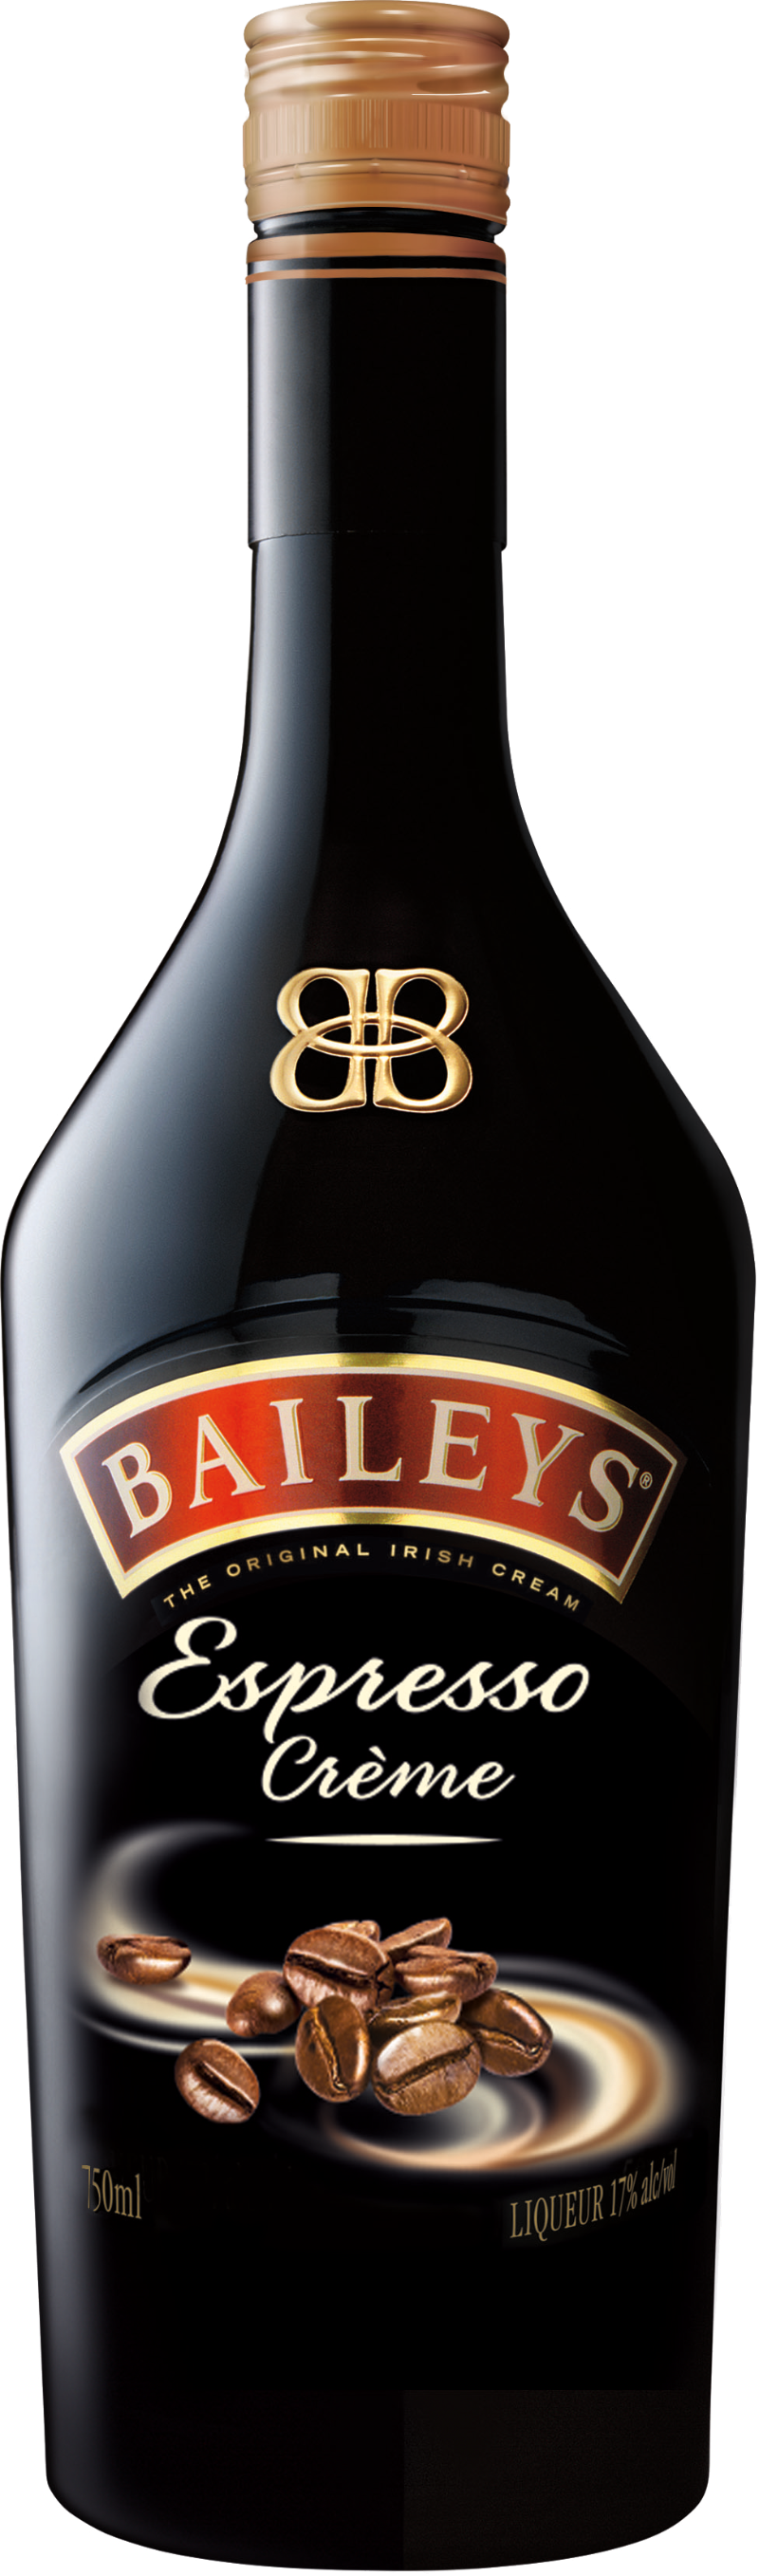 Baileys - Espresso Creme 100 17% cl vol